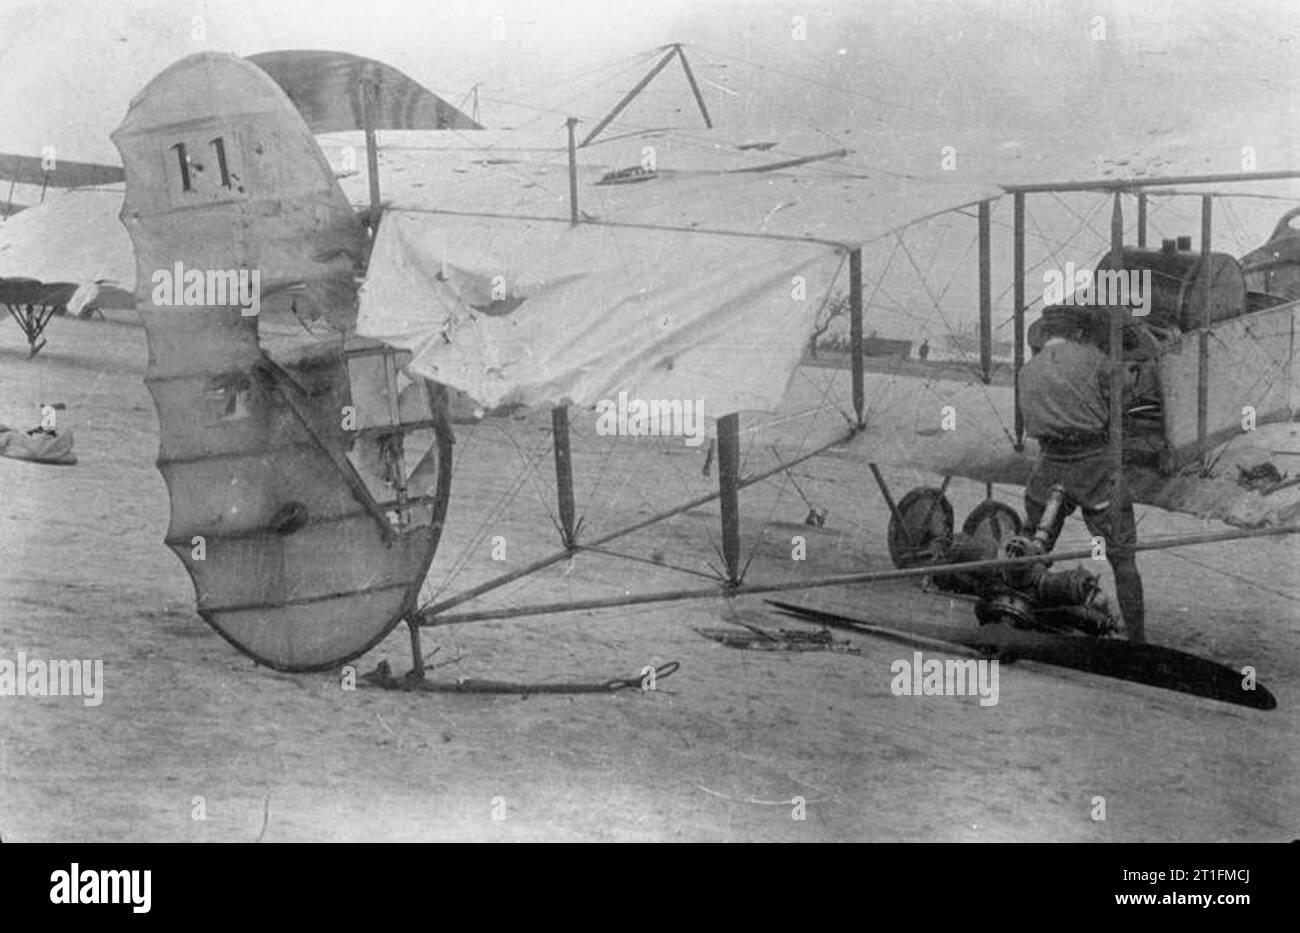 Knatchbull M (Capt der Hon) Sammlung Nr. 3 Squadron R.N. A. S. Henri Farman Flugzeug in der Luft durch türkische Feuer geschlagen worden waren, aber sicher gelandet. Pilot: marix Fleet-Commander R., D.S.O. Beobachter: Leutnant der Hon M. Knatchbull, M. C. Gallipoli, Juni 1915. Stockfoto